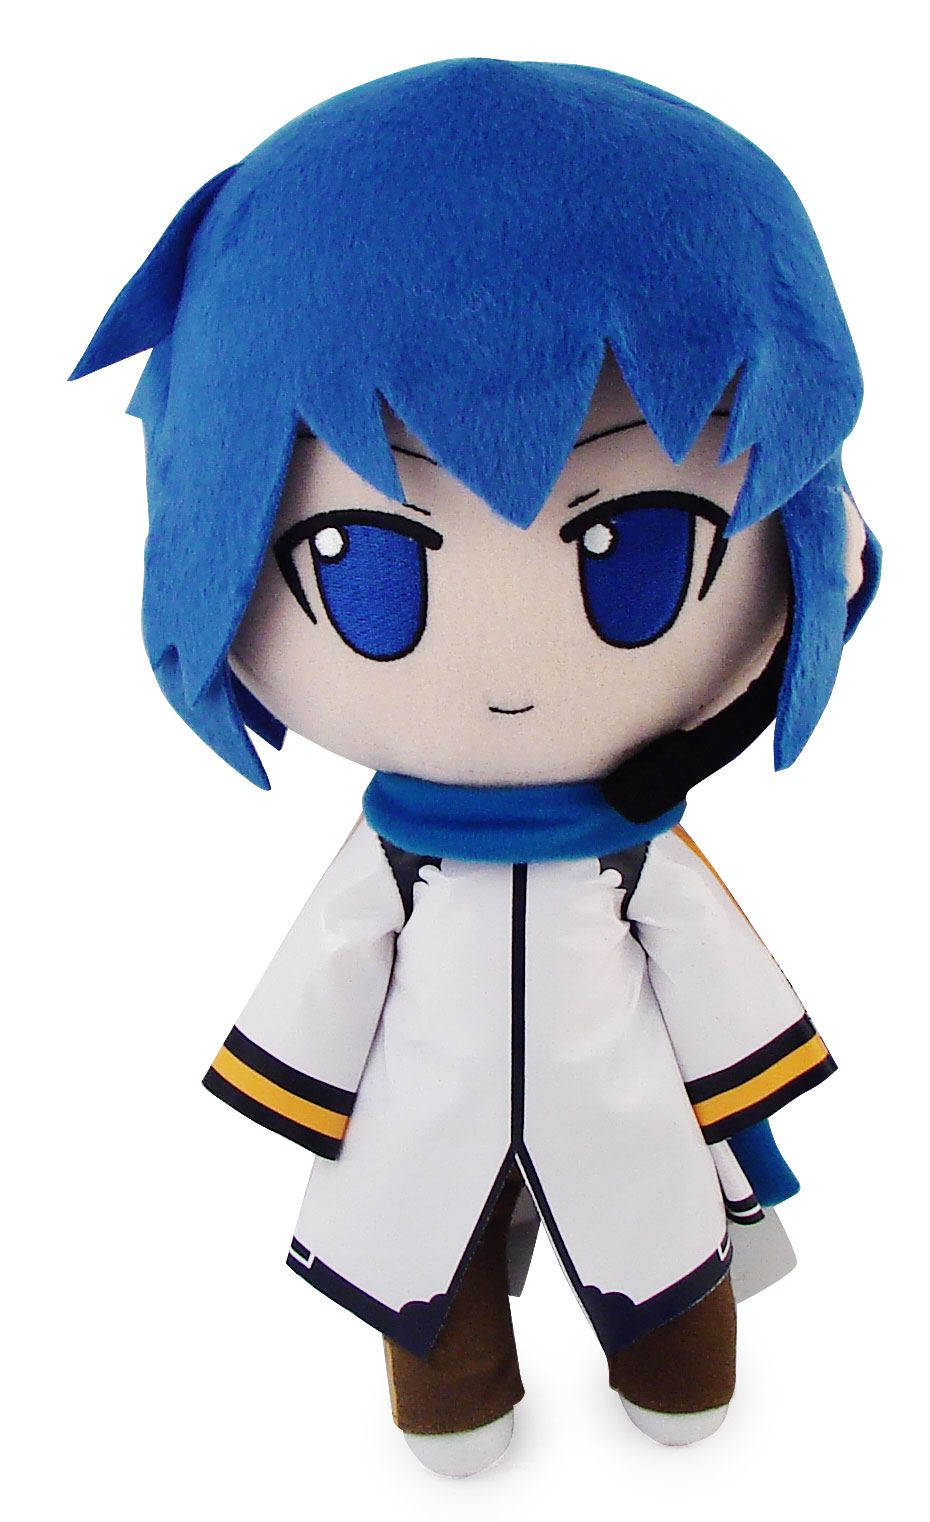 Nendoroid Plush Doll Series 3: Kaito